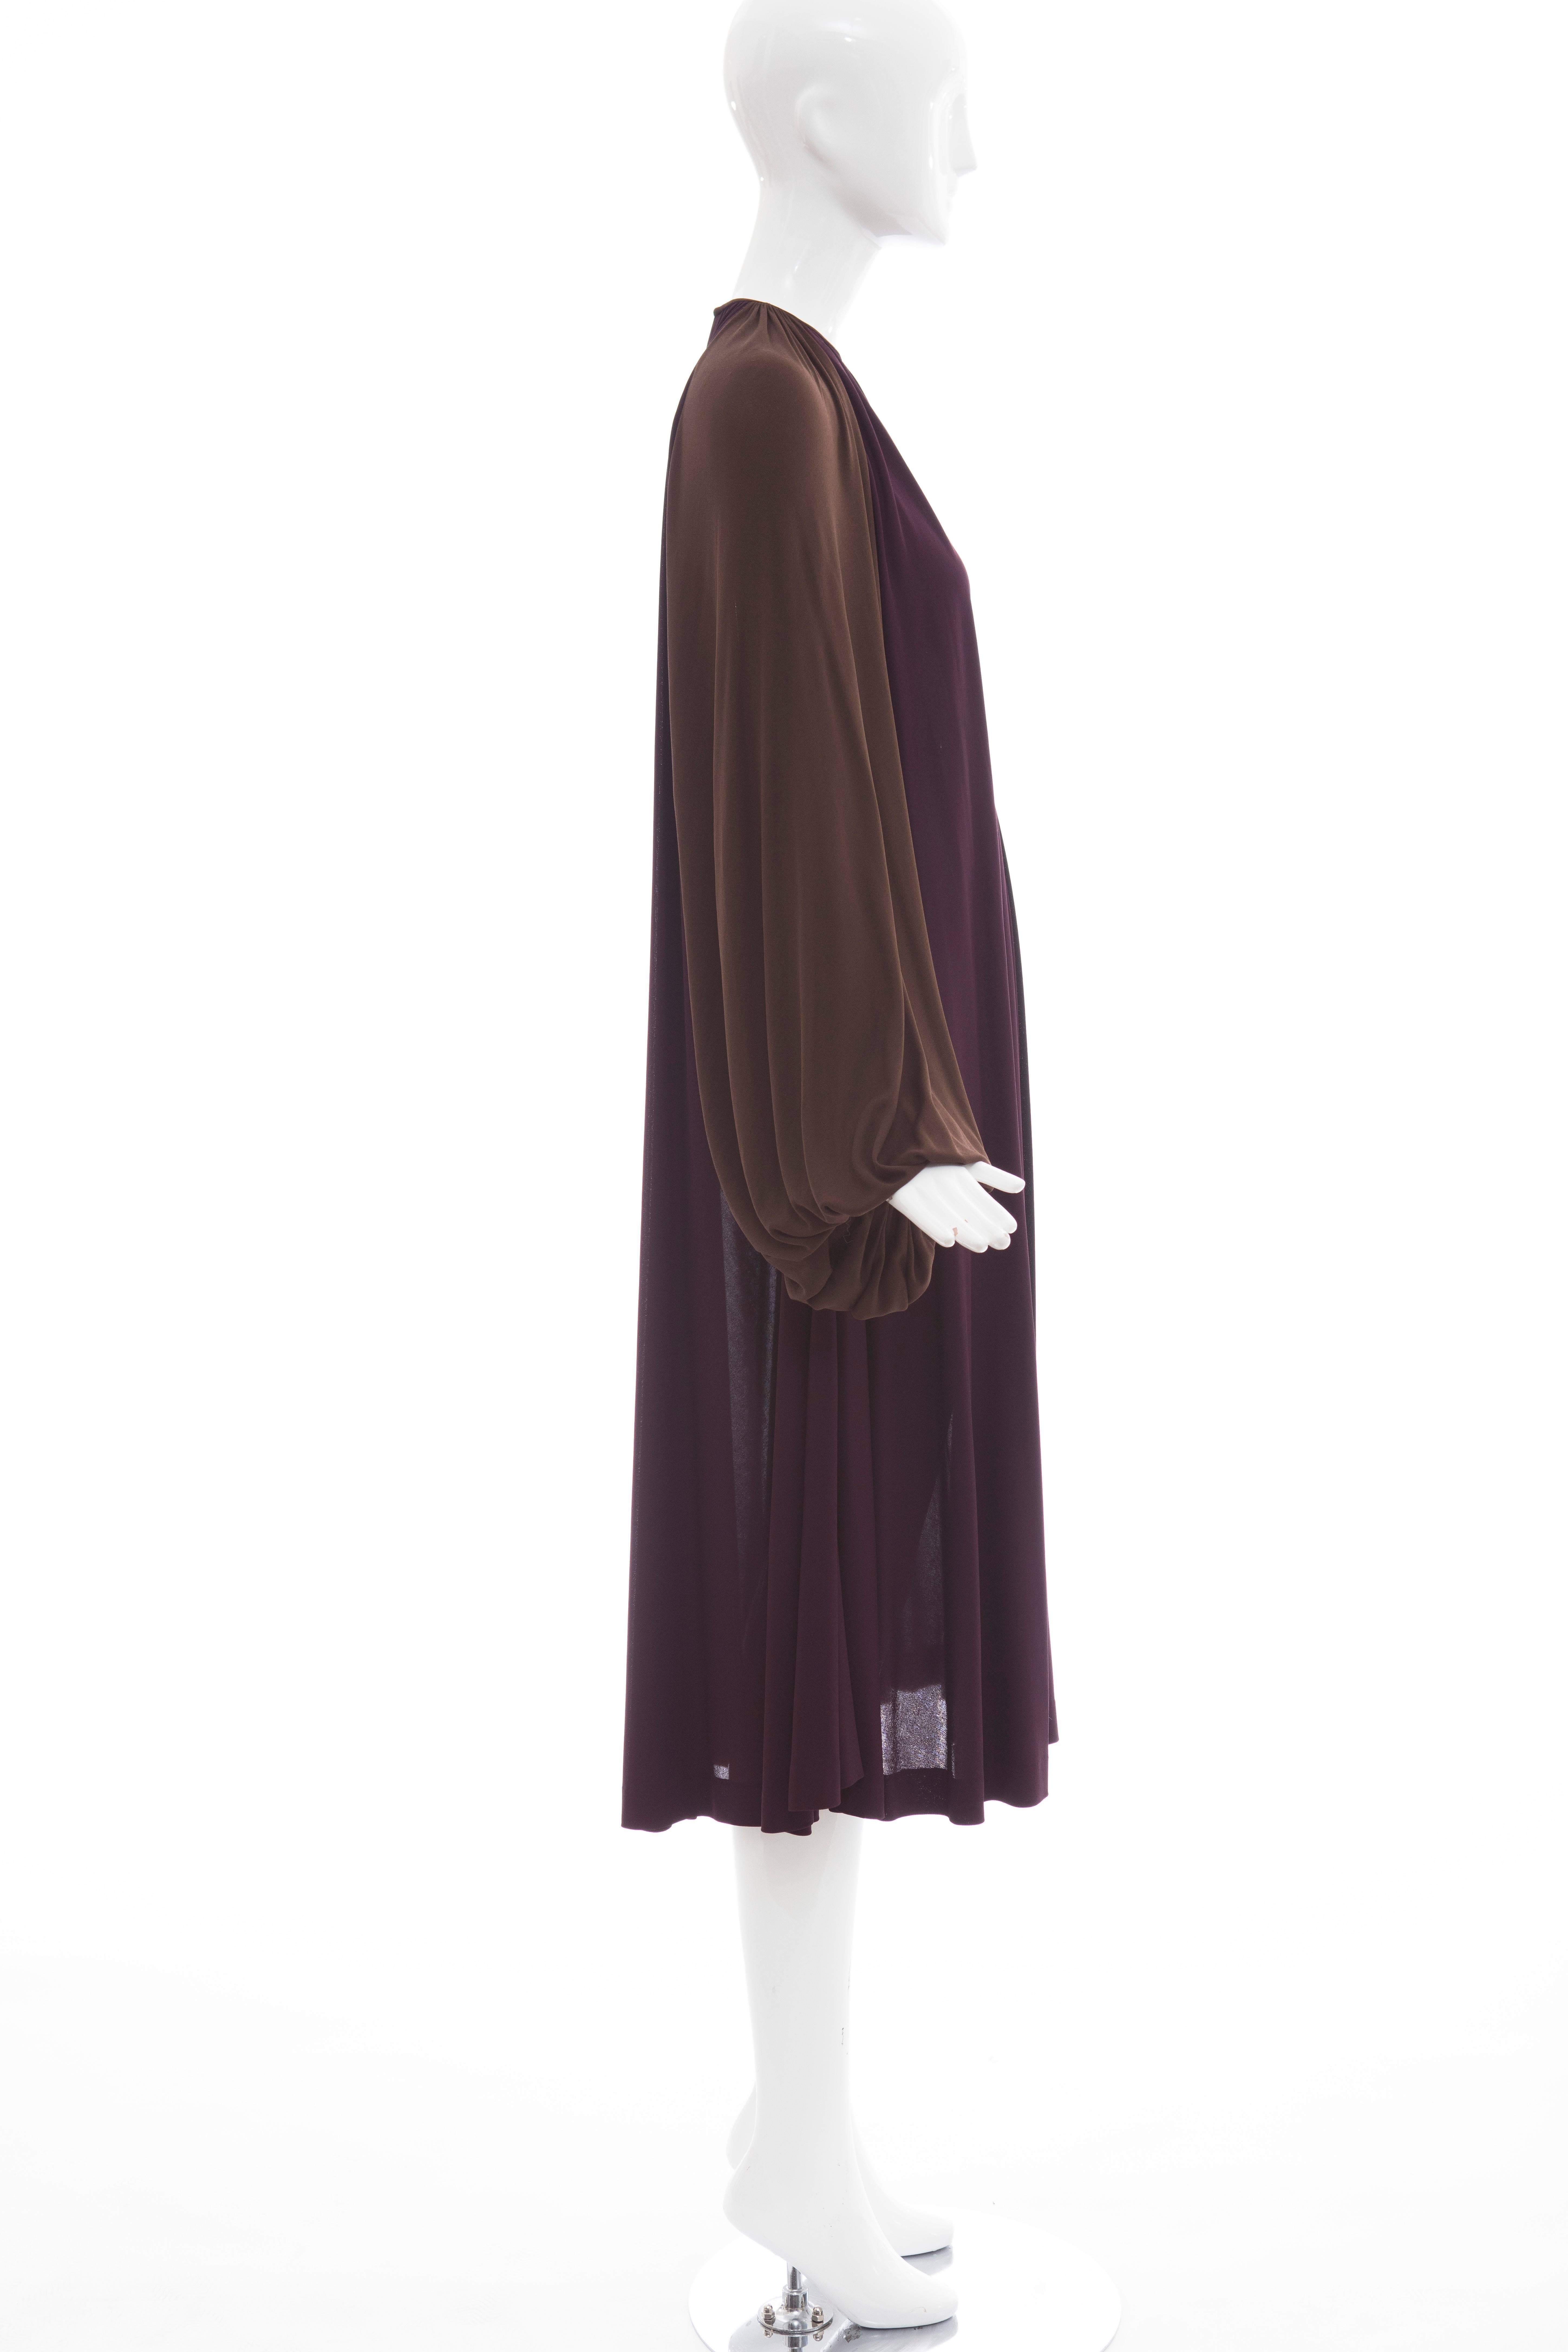 Women's James Galanos Swing Dress Chocolate Brown Bishop Sleeves, Circa 1970's